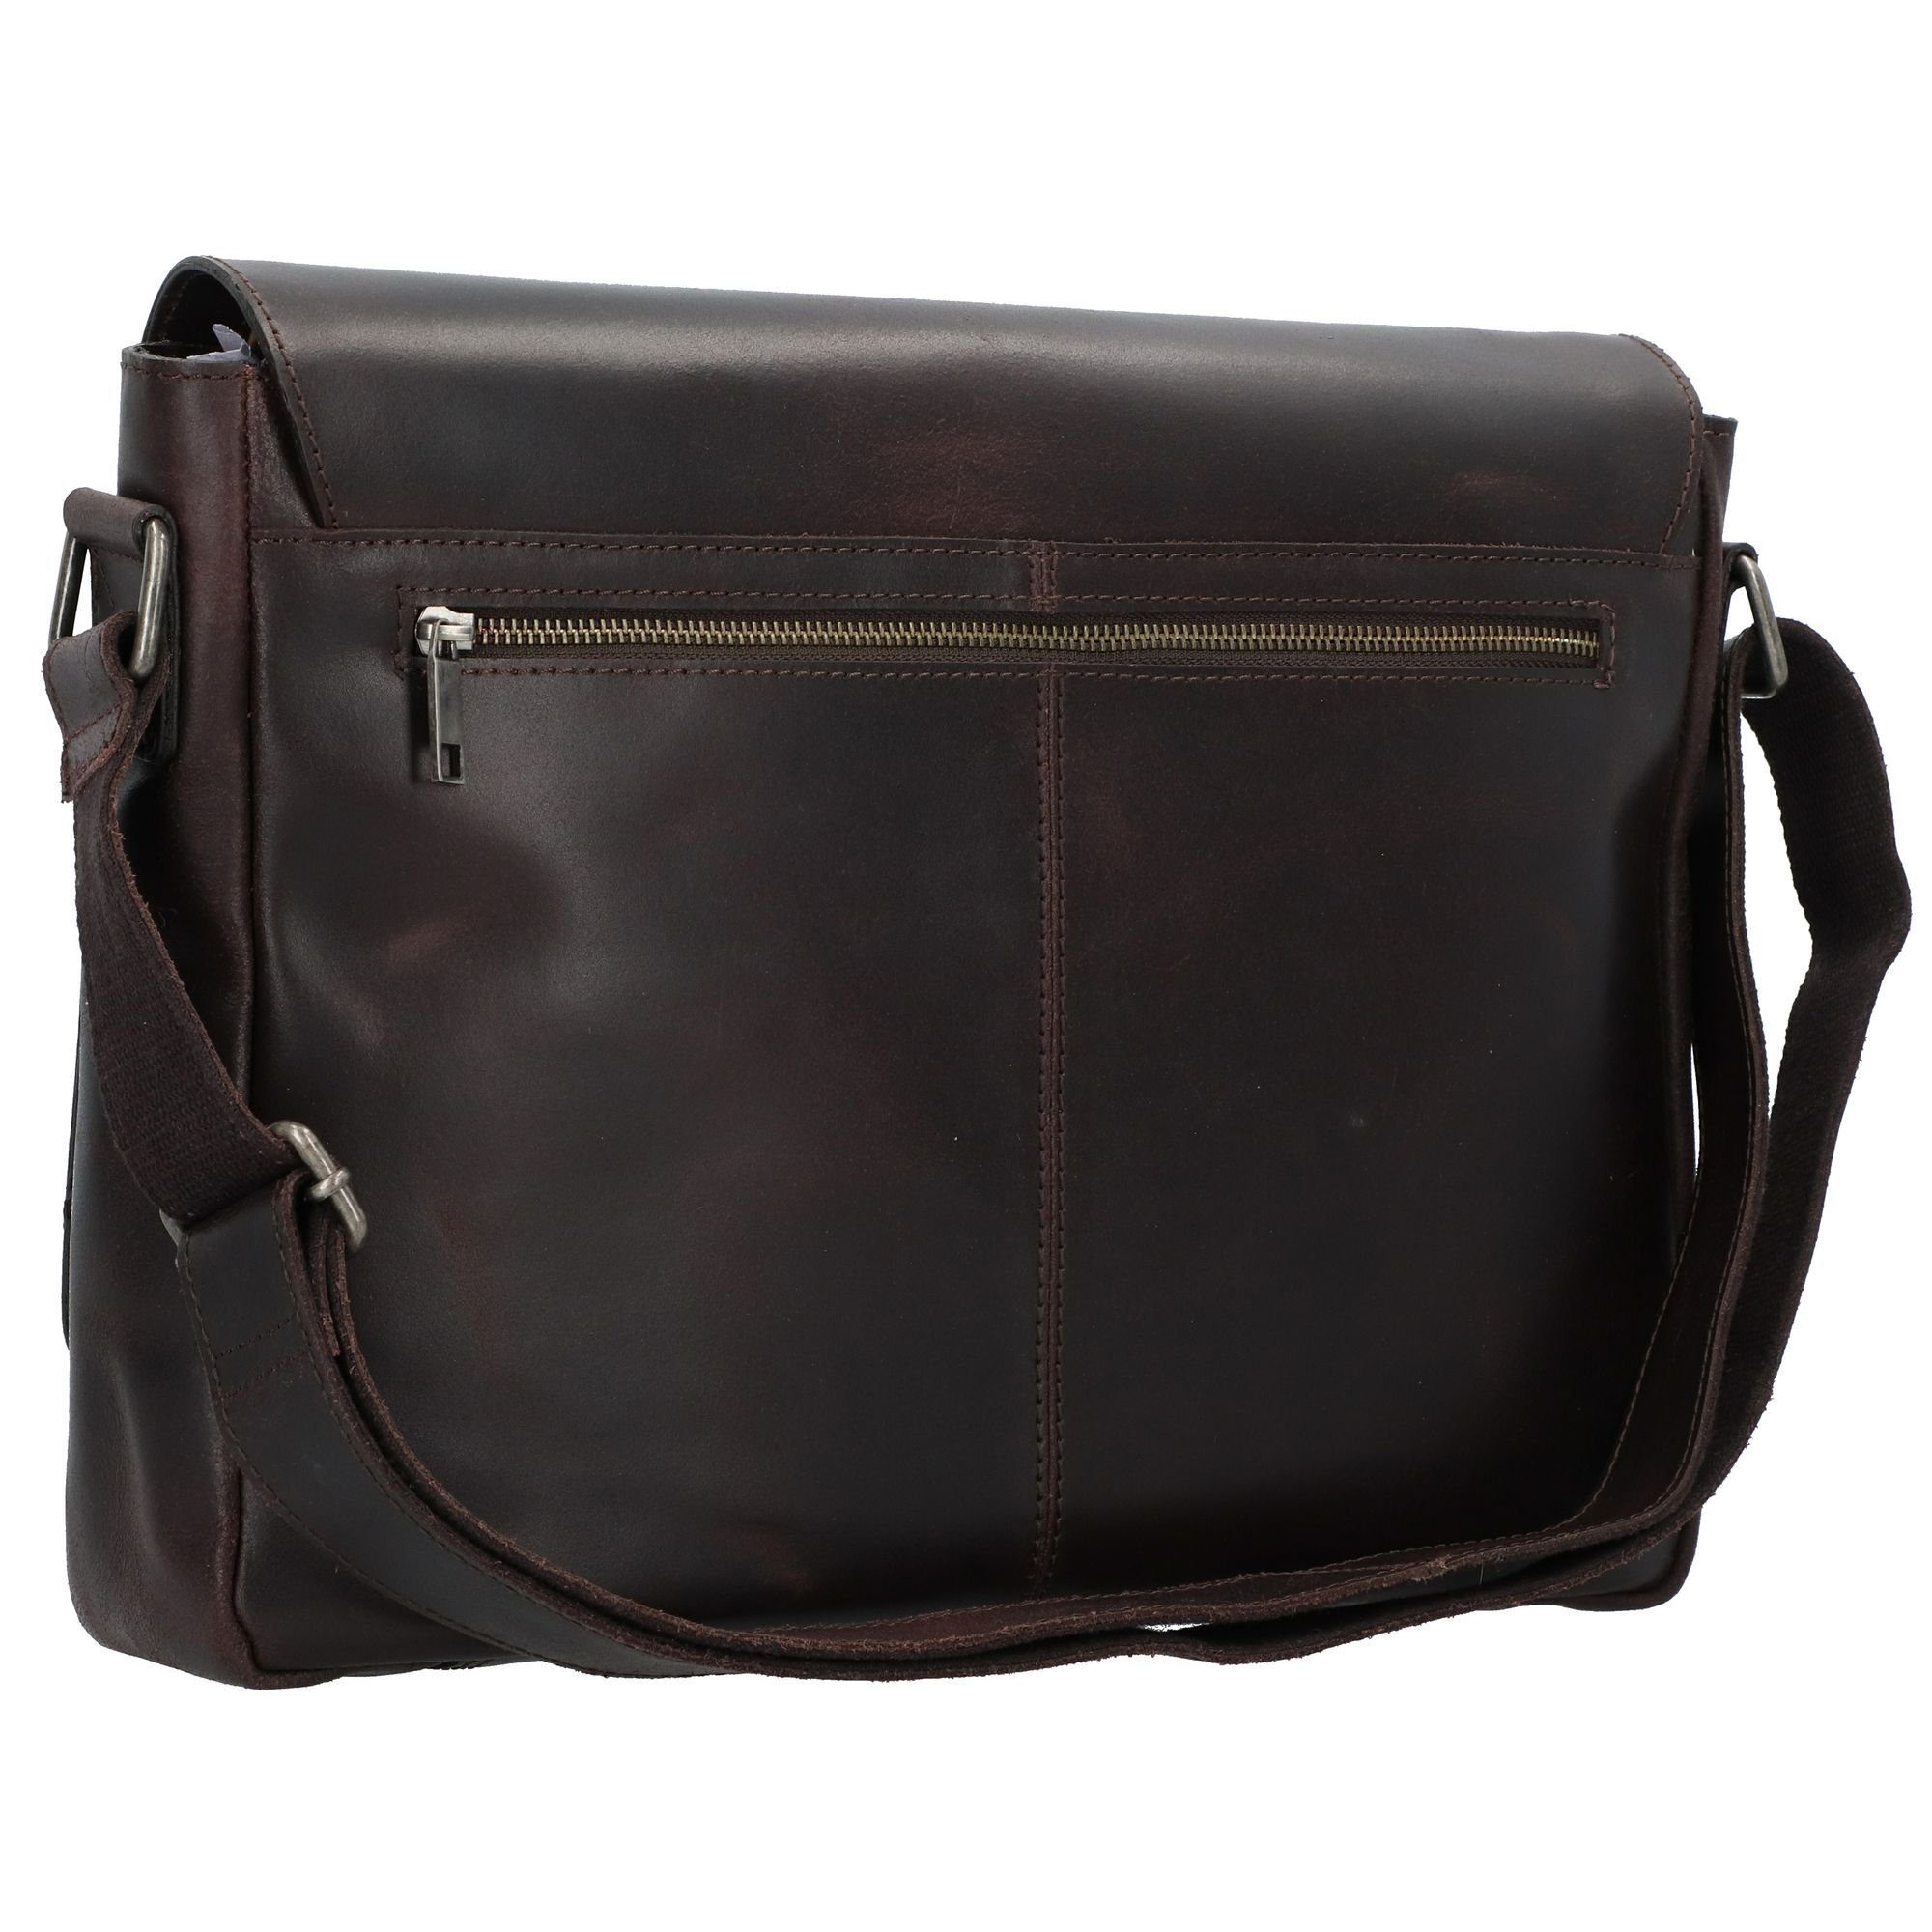 Leder Bag Messenger Burkely Burkley brown Vintage,